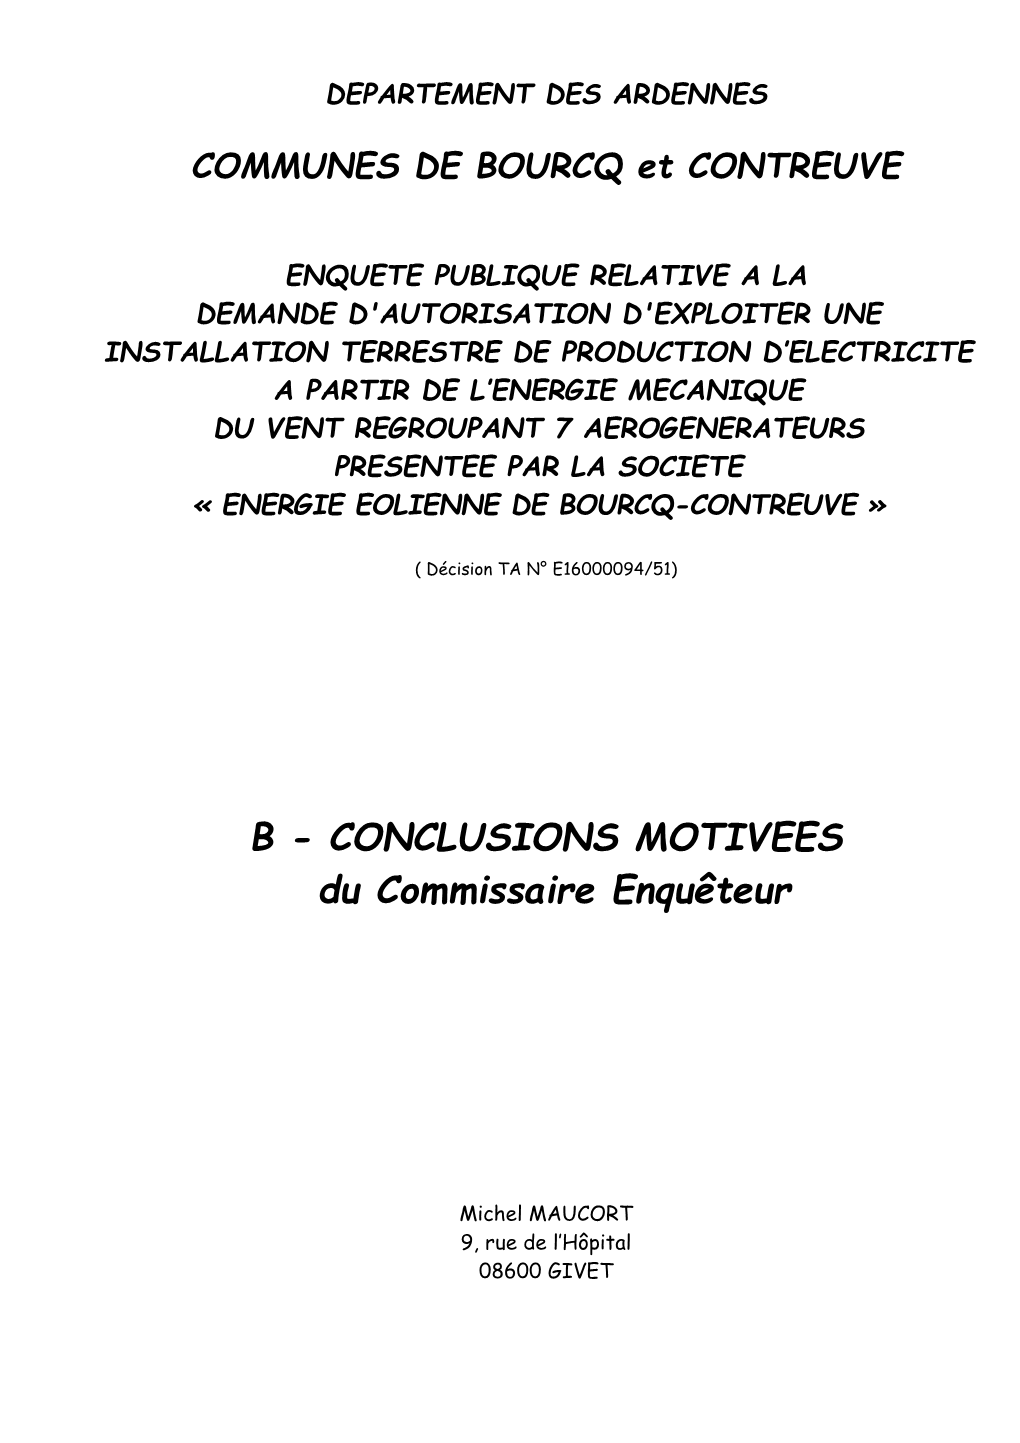 Conclusions Bourcq-Contreuve